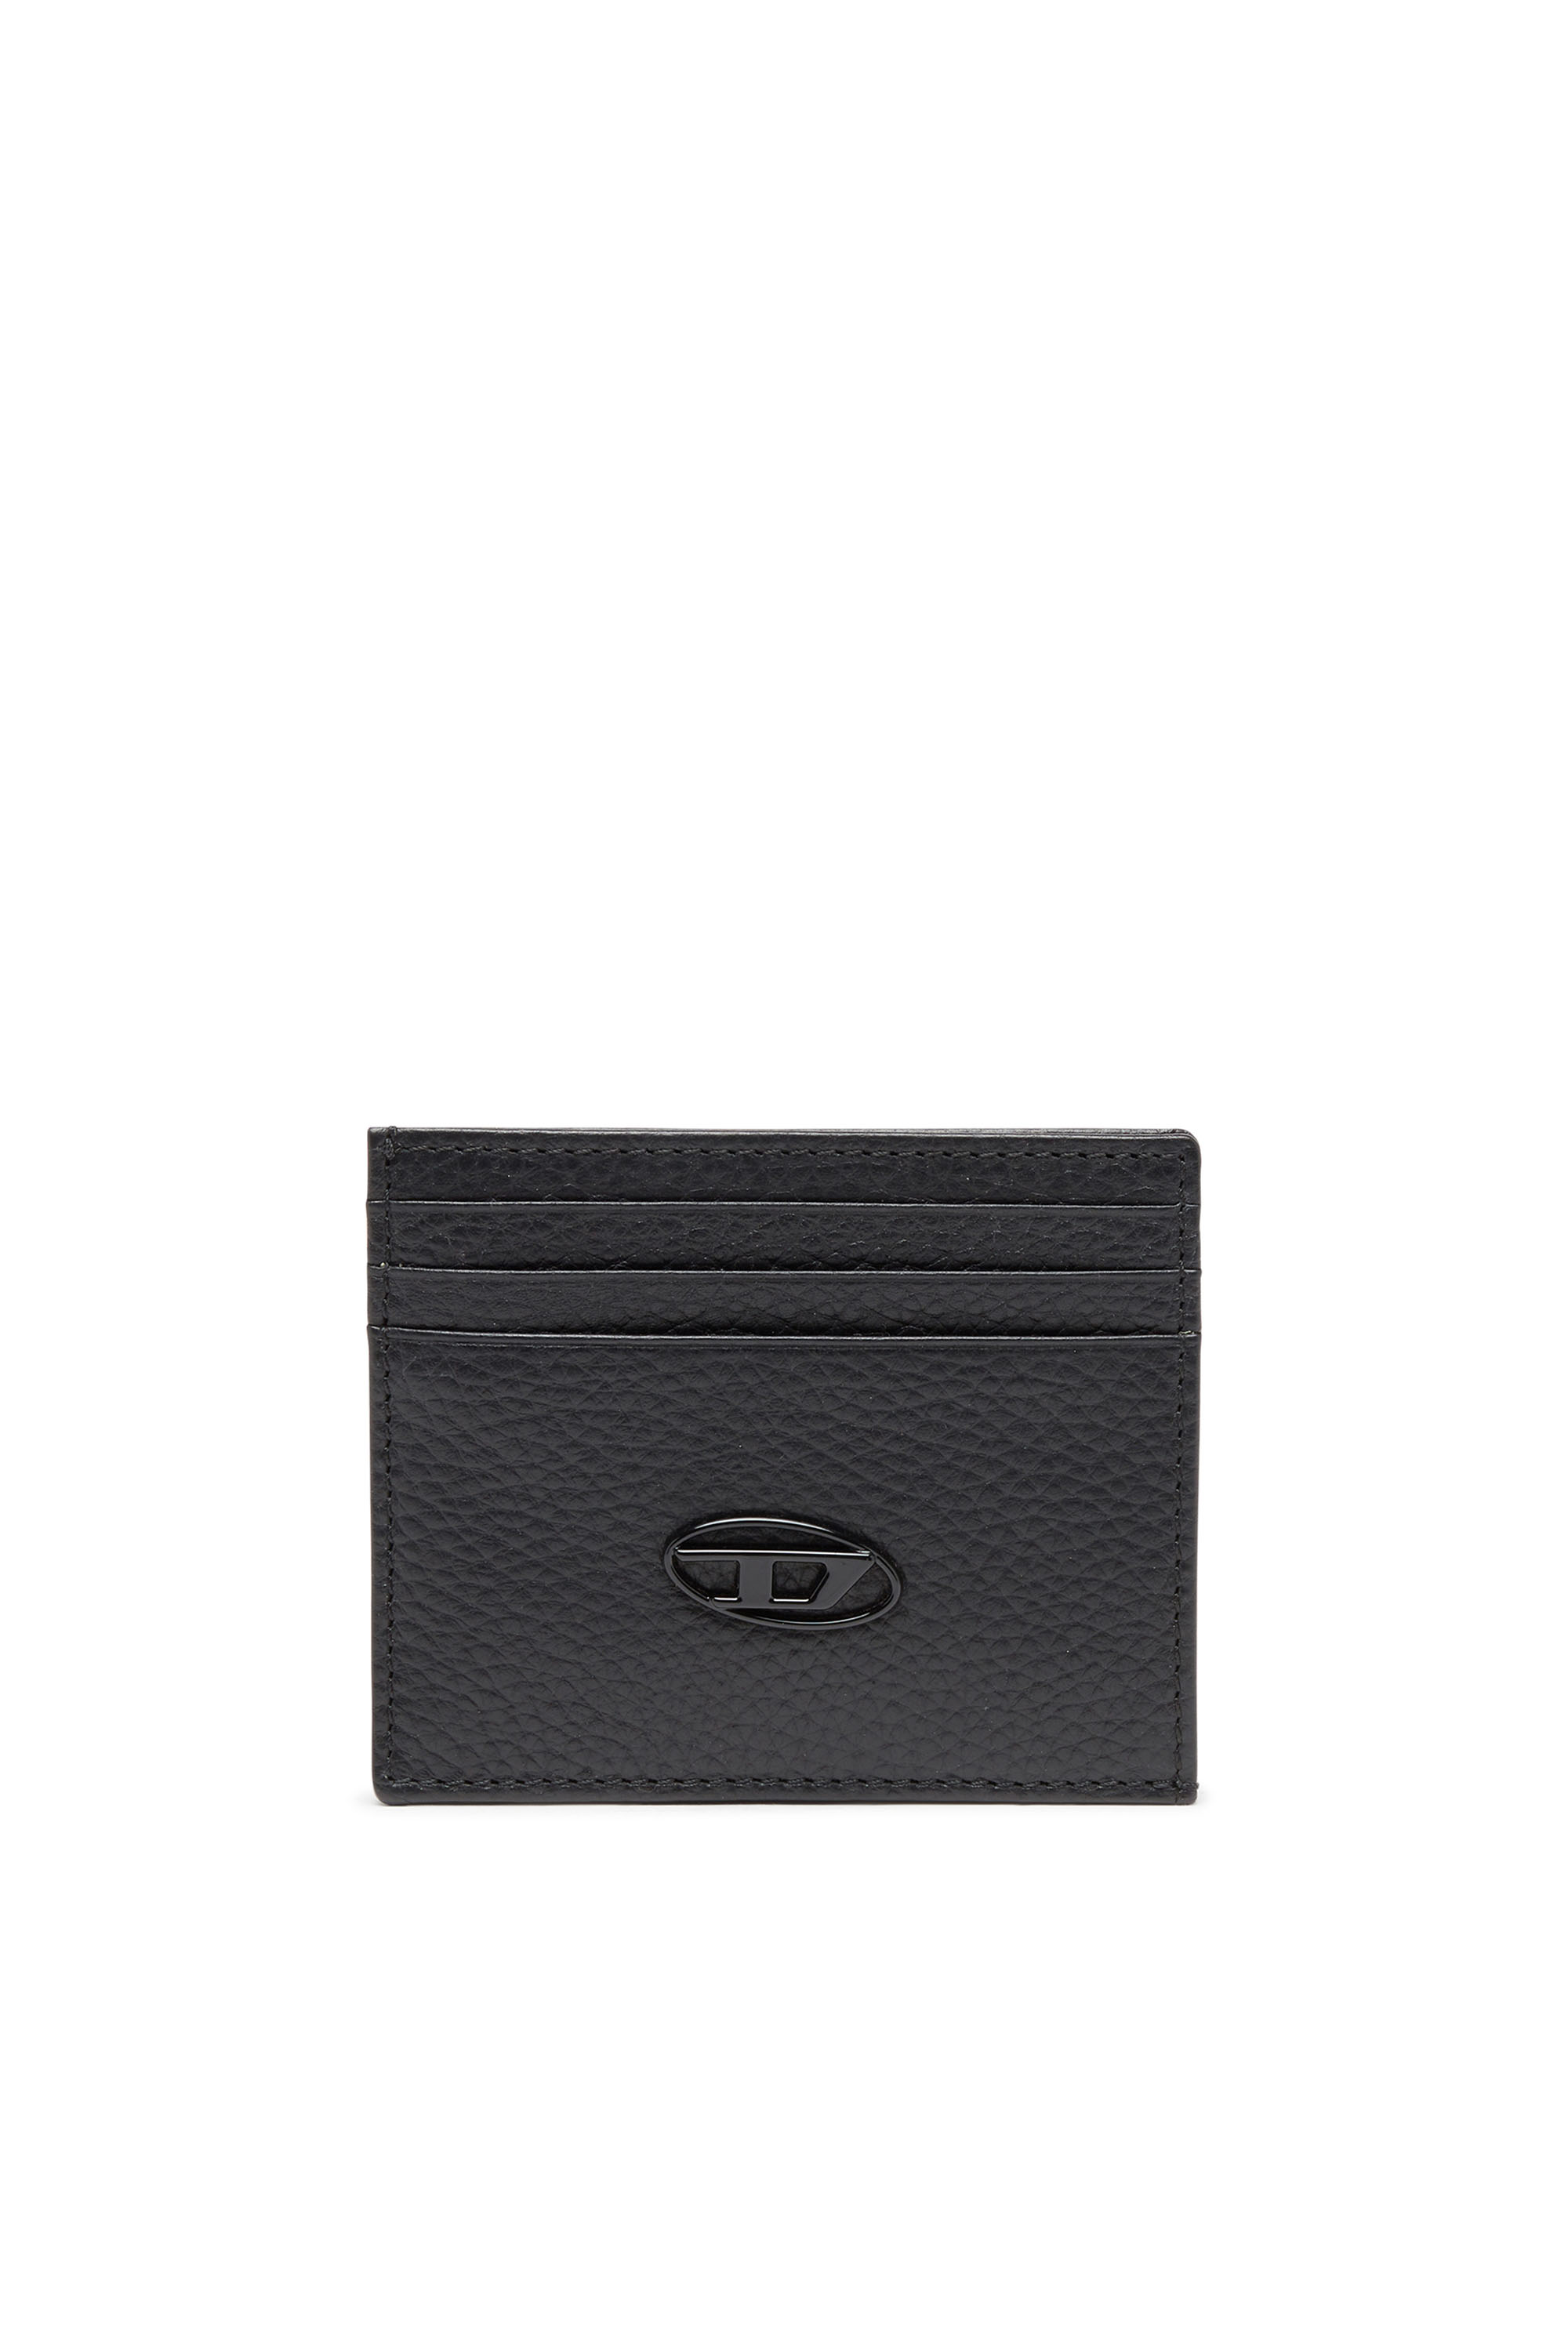 Diesel - CARD CASE, Black - Image 1